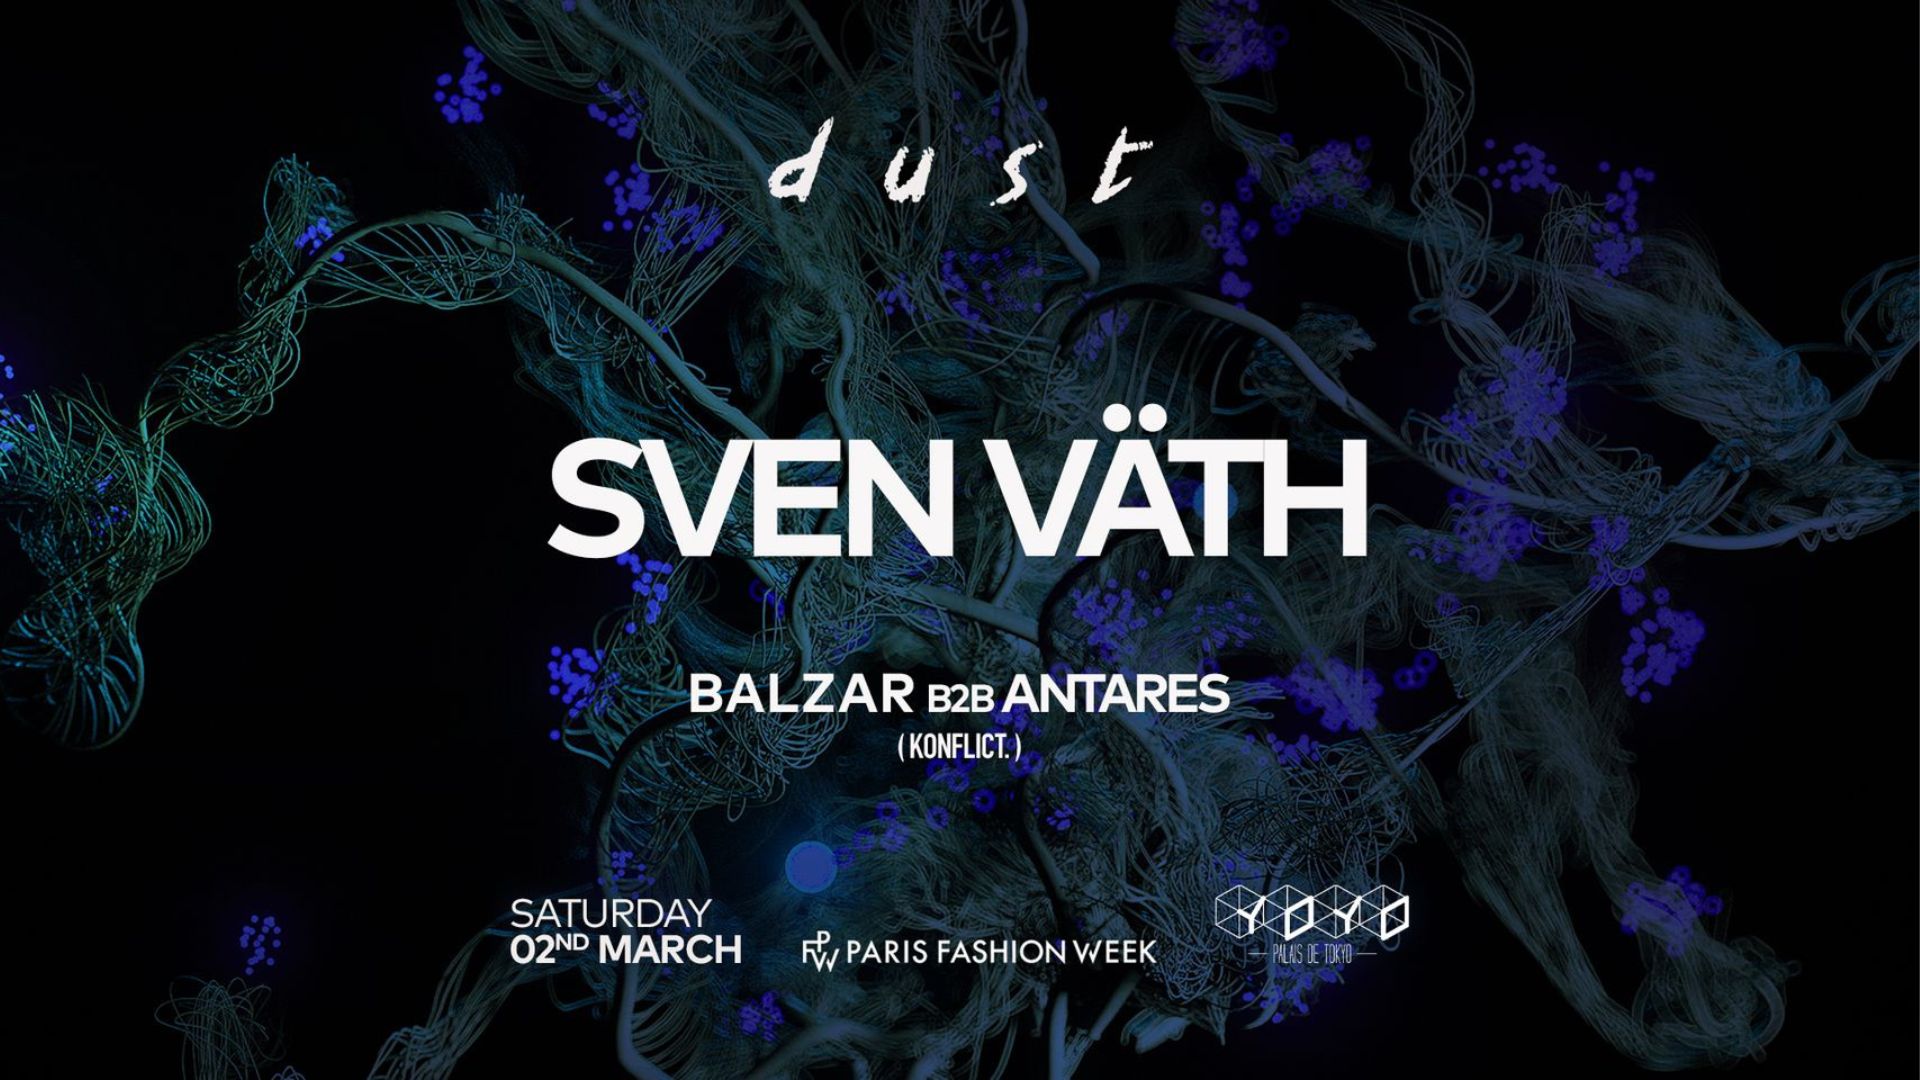 Affiche de la soirée Dust avec Sven Väth